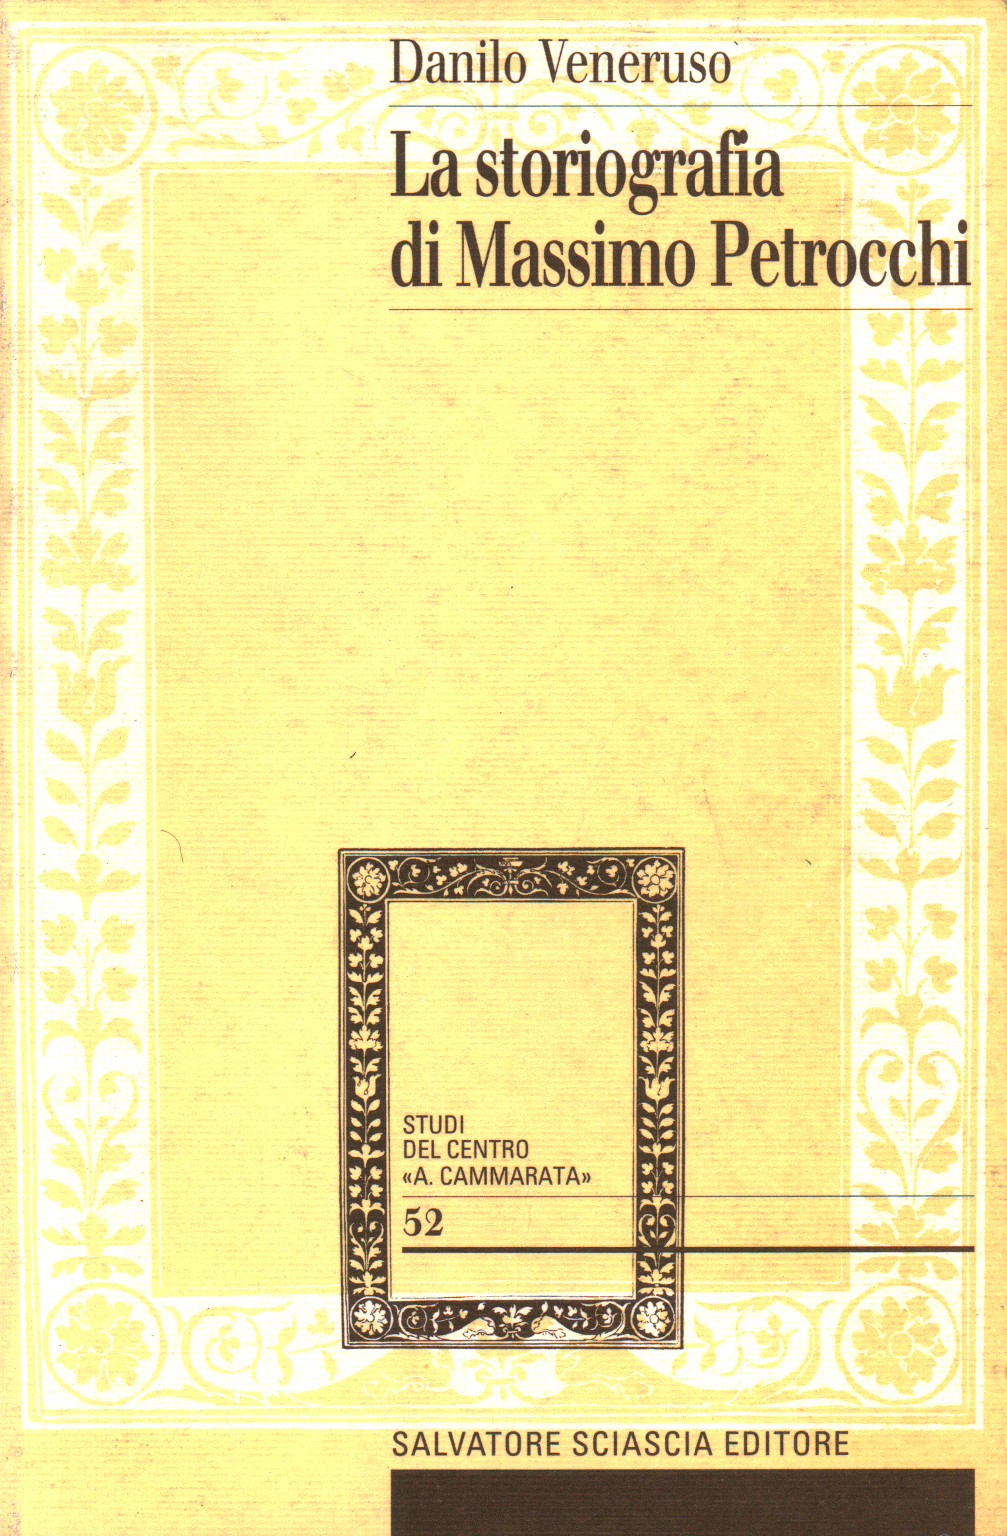 La storiografia di Massimo Petrocchi, s.a.